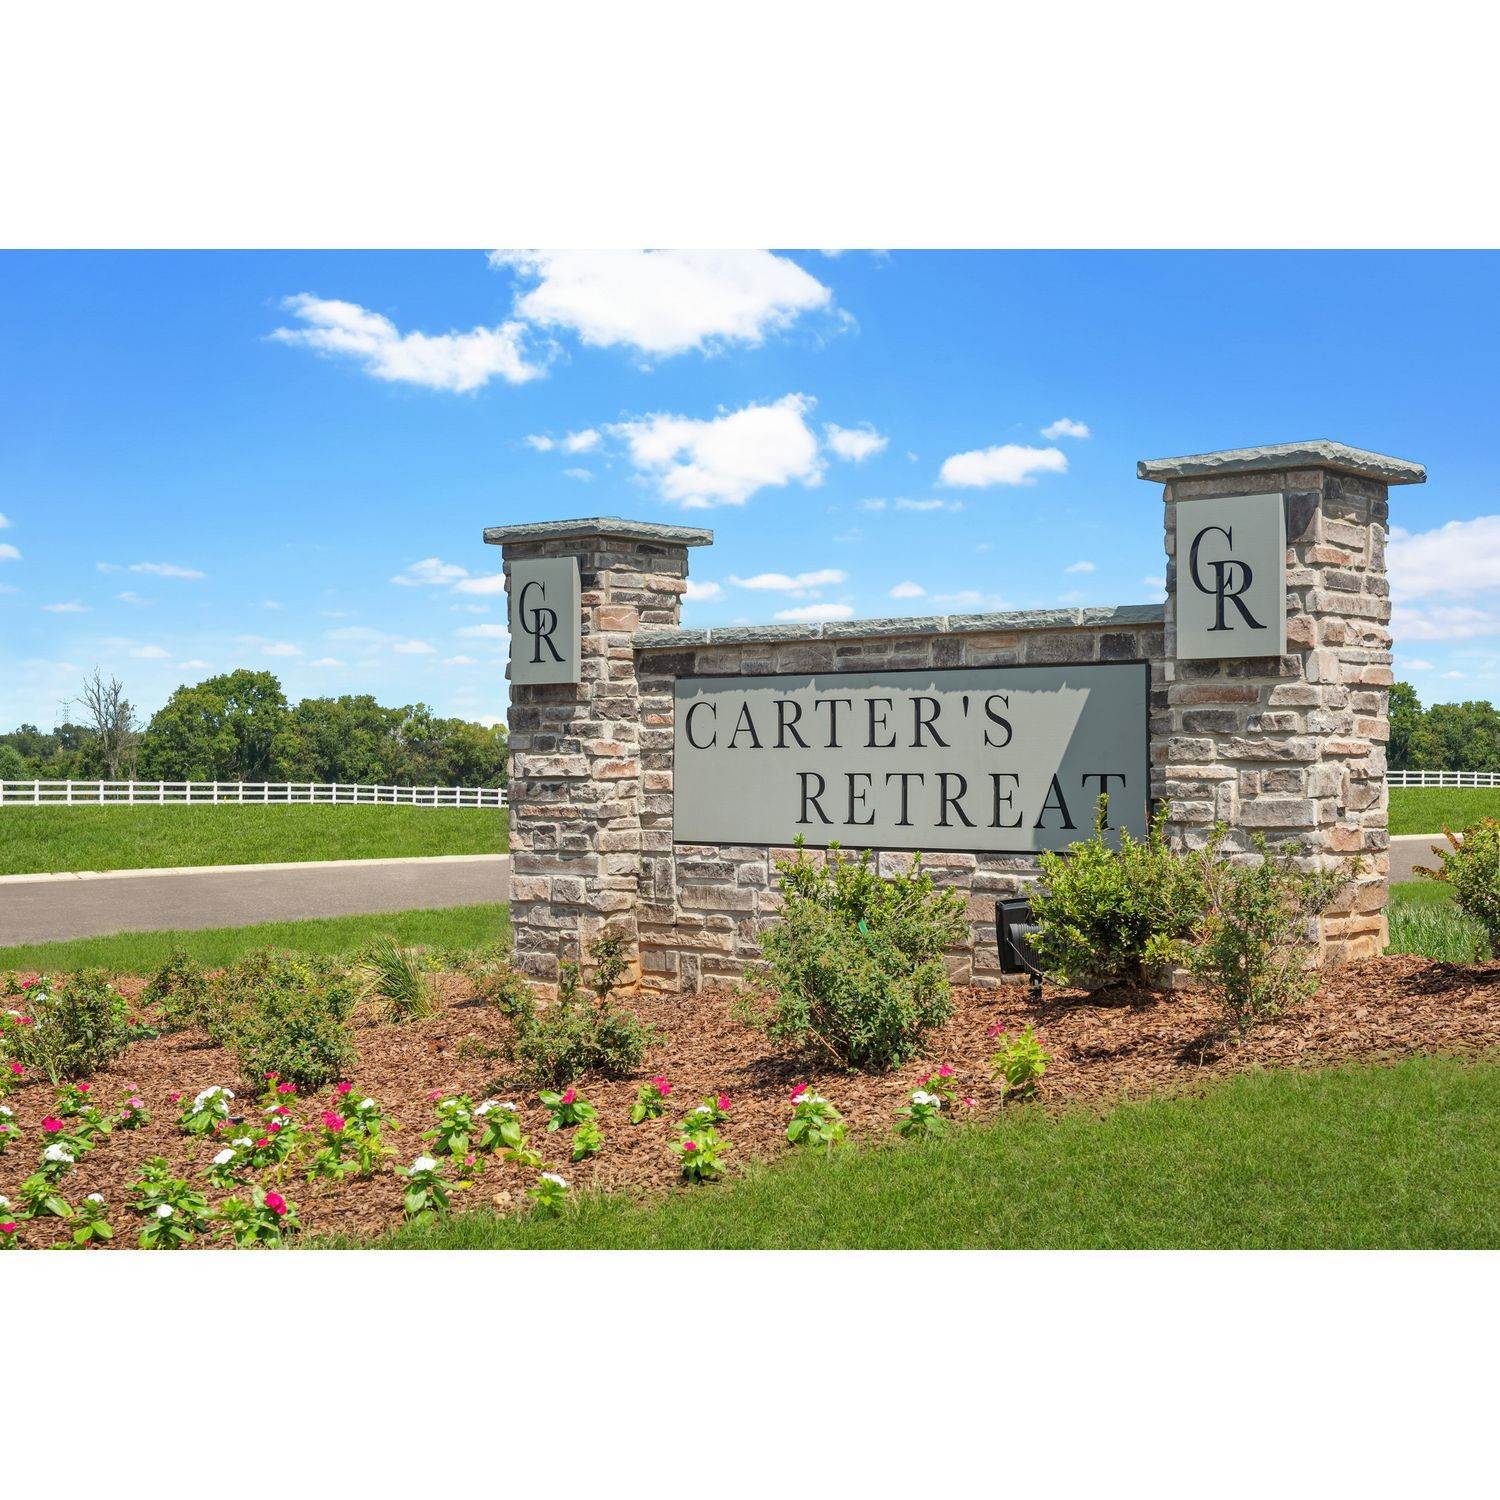 Carter's Retreat building at 2429 Curbow Drive, Murfreesboro, TN 37127